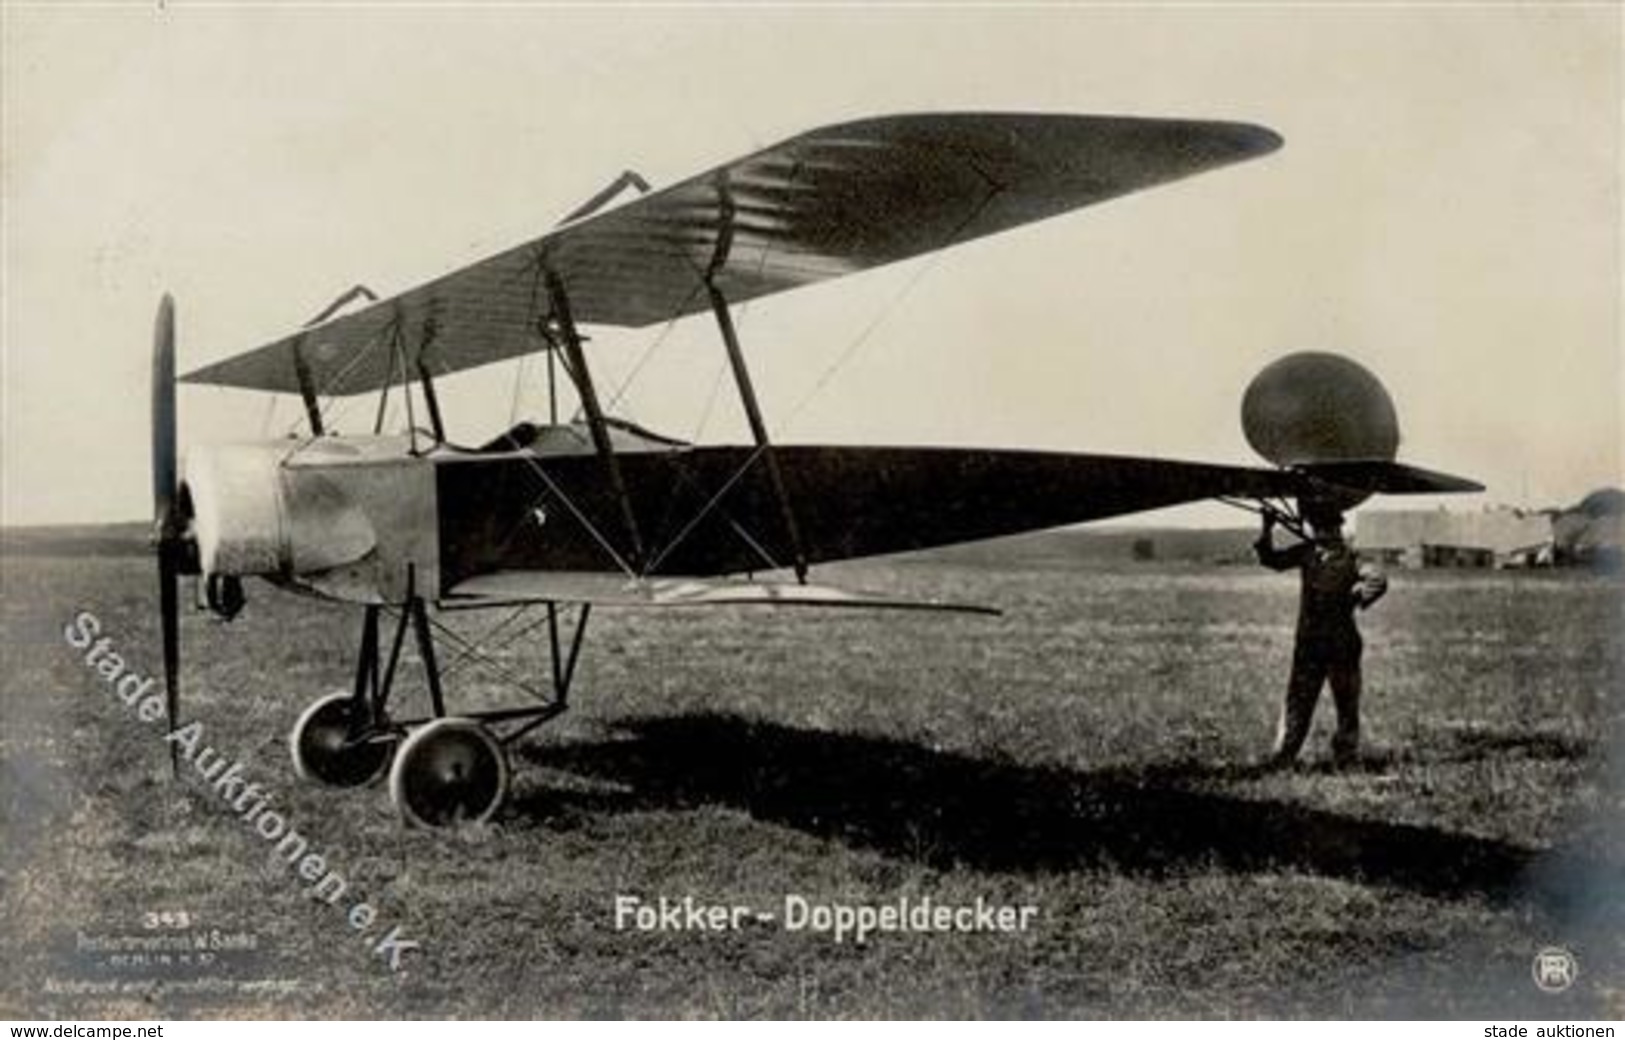 Sanke, Flugzeug Nr. 343 Fokker Doppeldecker Foto AK I-II Aviation - 1914-1918: 1st War